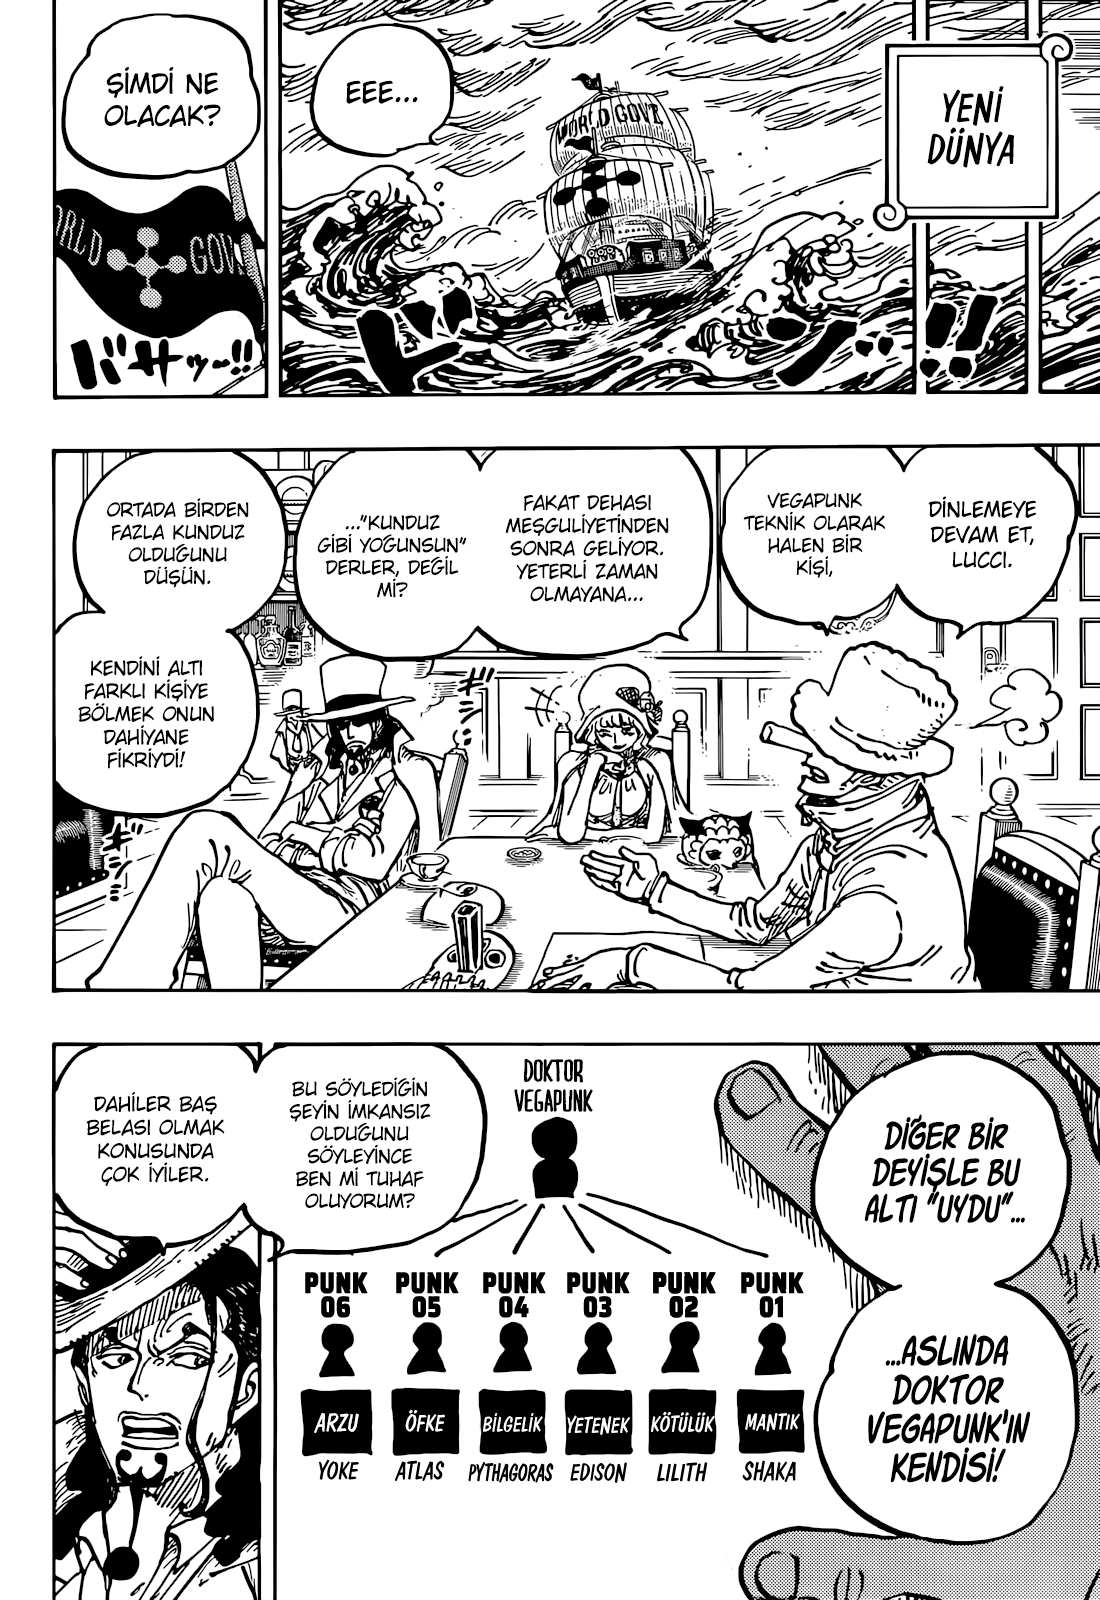 Spoiler] - 1062 Spoiler Yorumları  One Piece Türkiye Fan Sayfası, One Piece  Türkçe Manga, One Piece Bölümler, One Piece Film